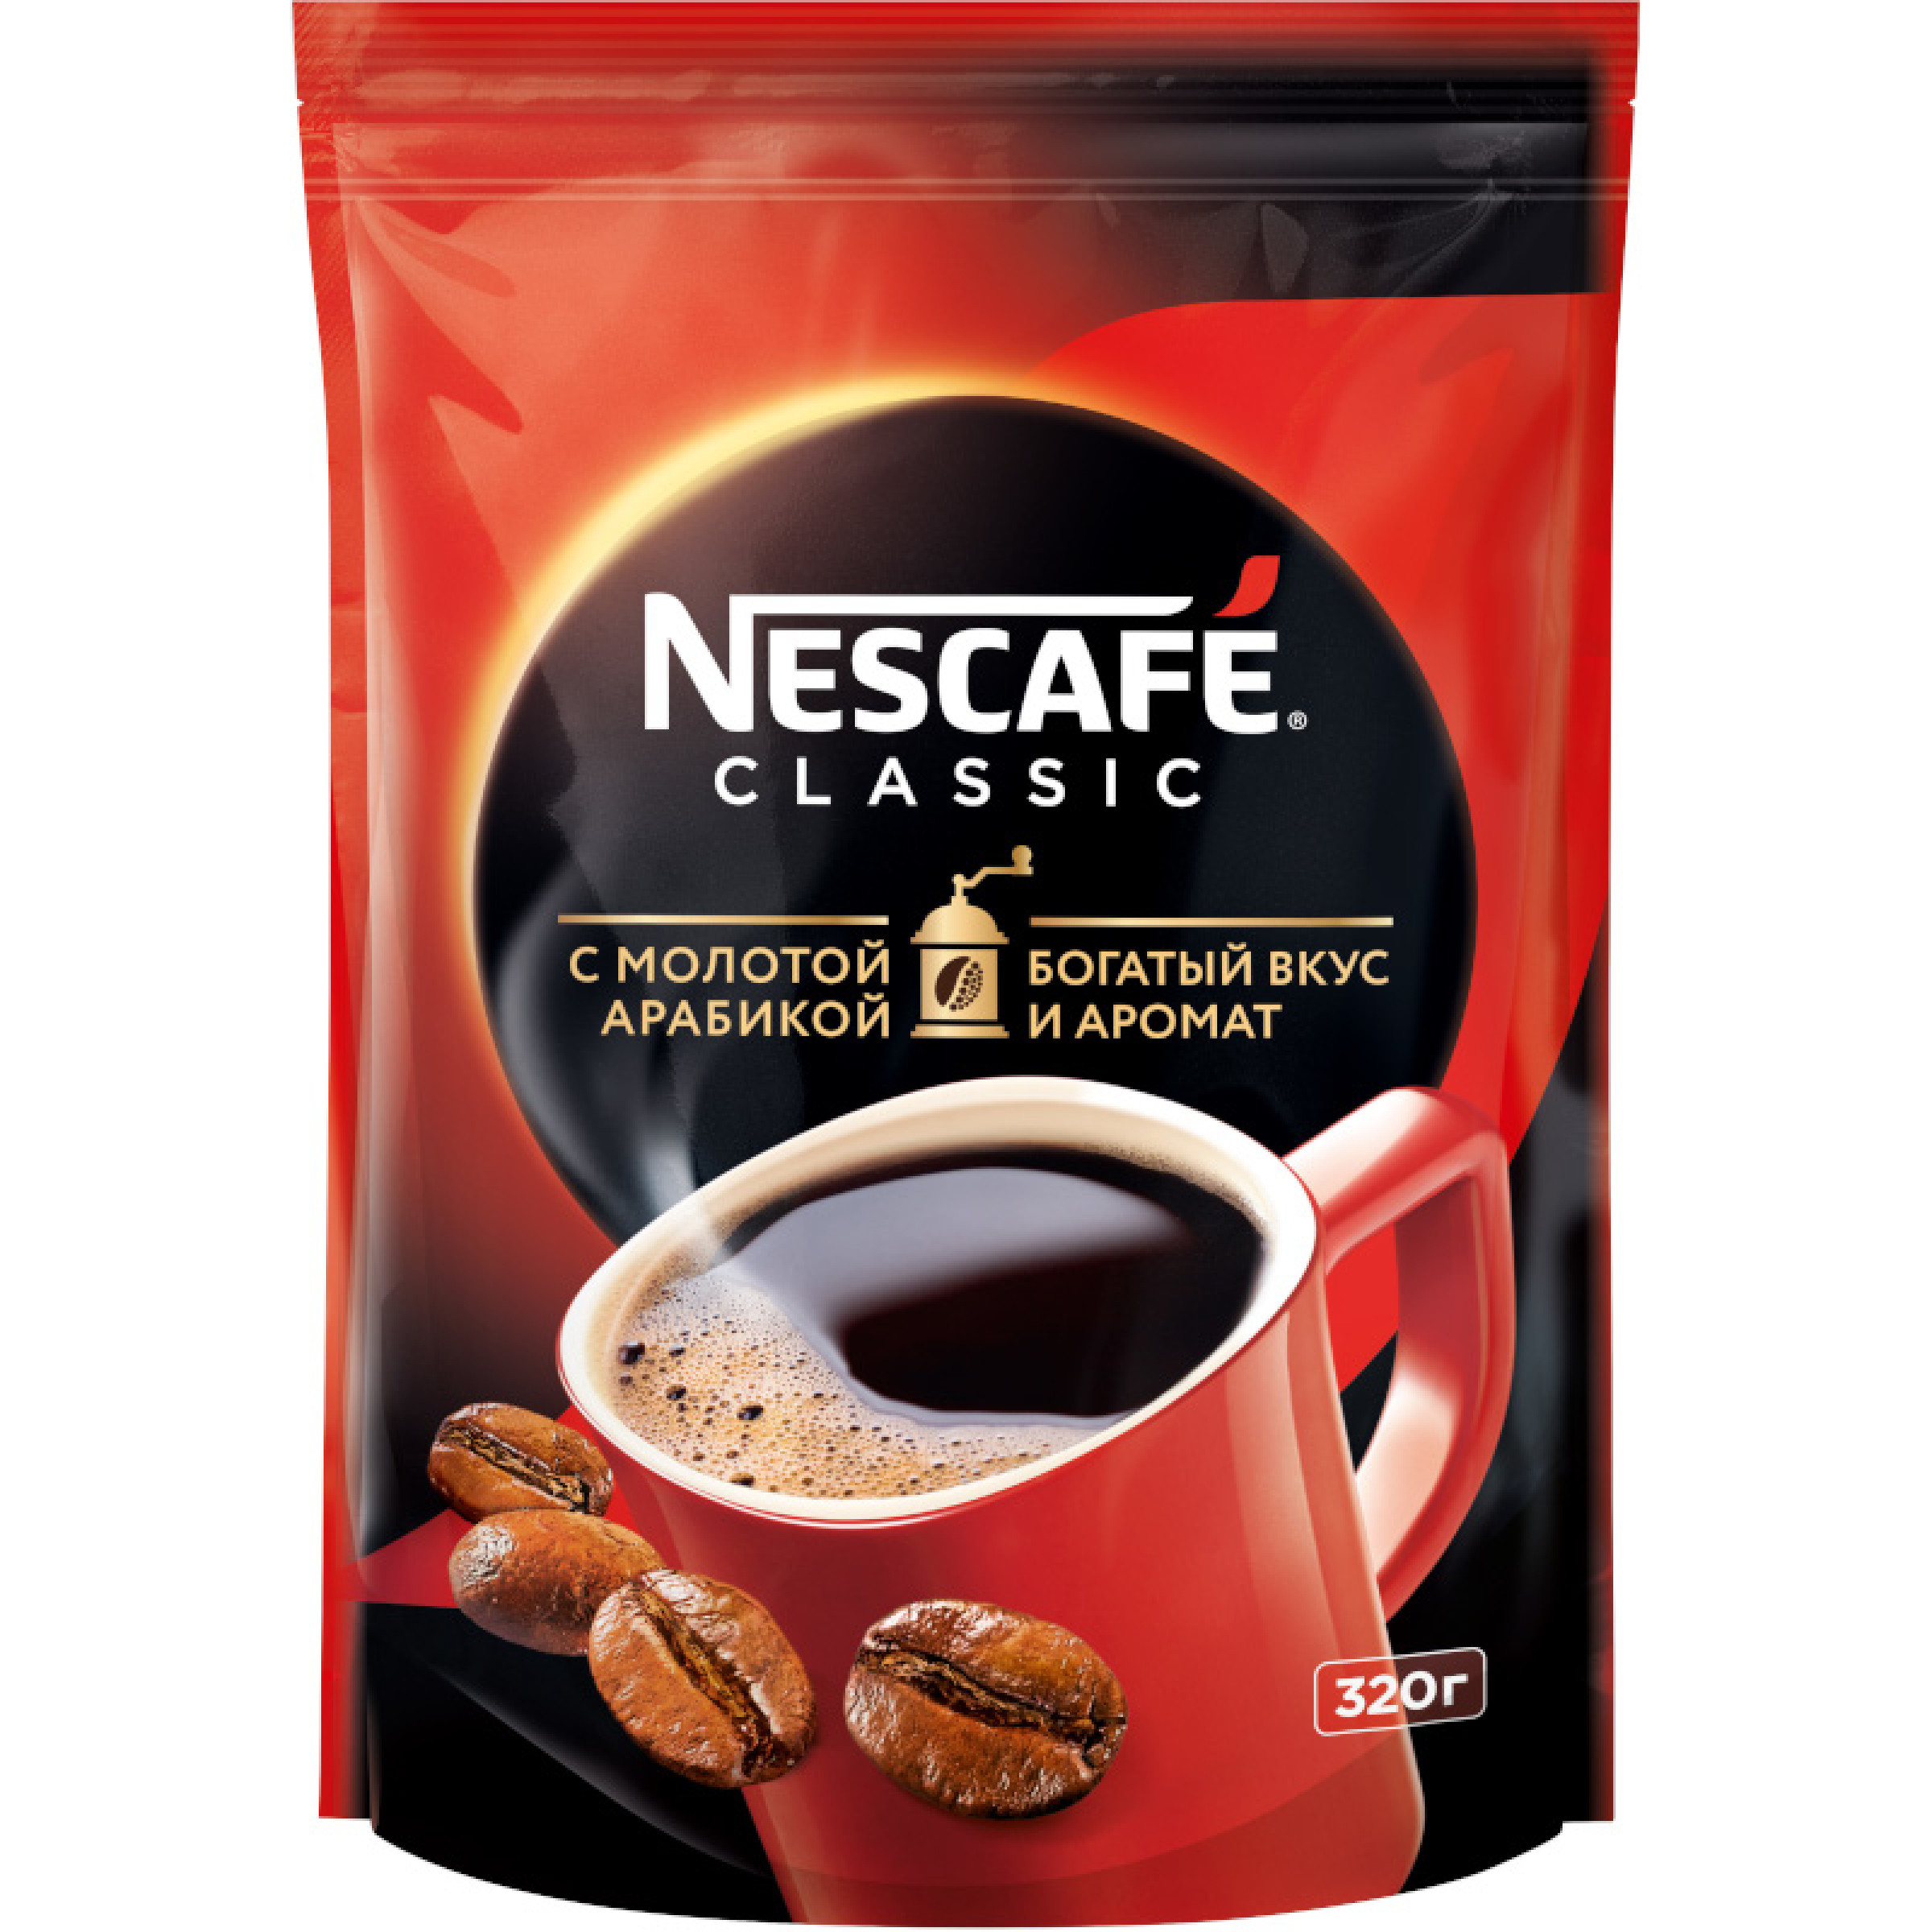 NESCAFE® CLASSIC растворимый кофе с натуральным молотым, 320 г